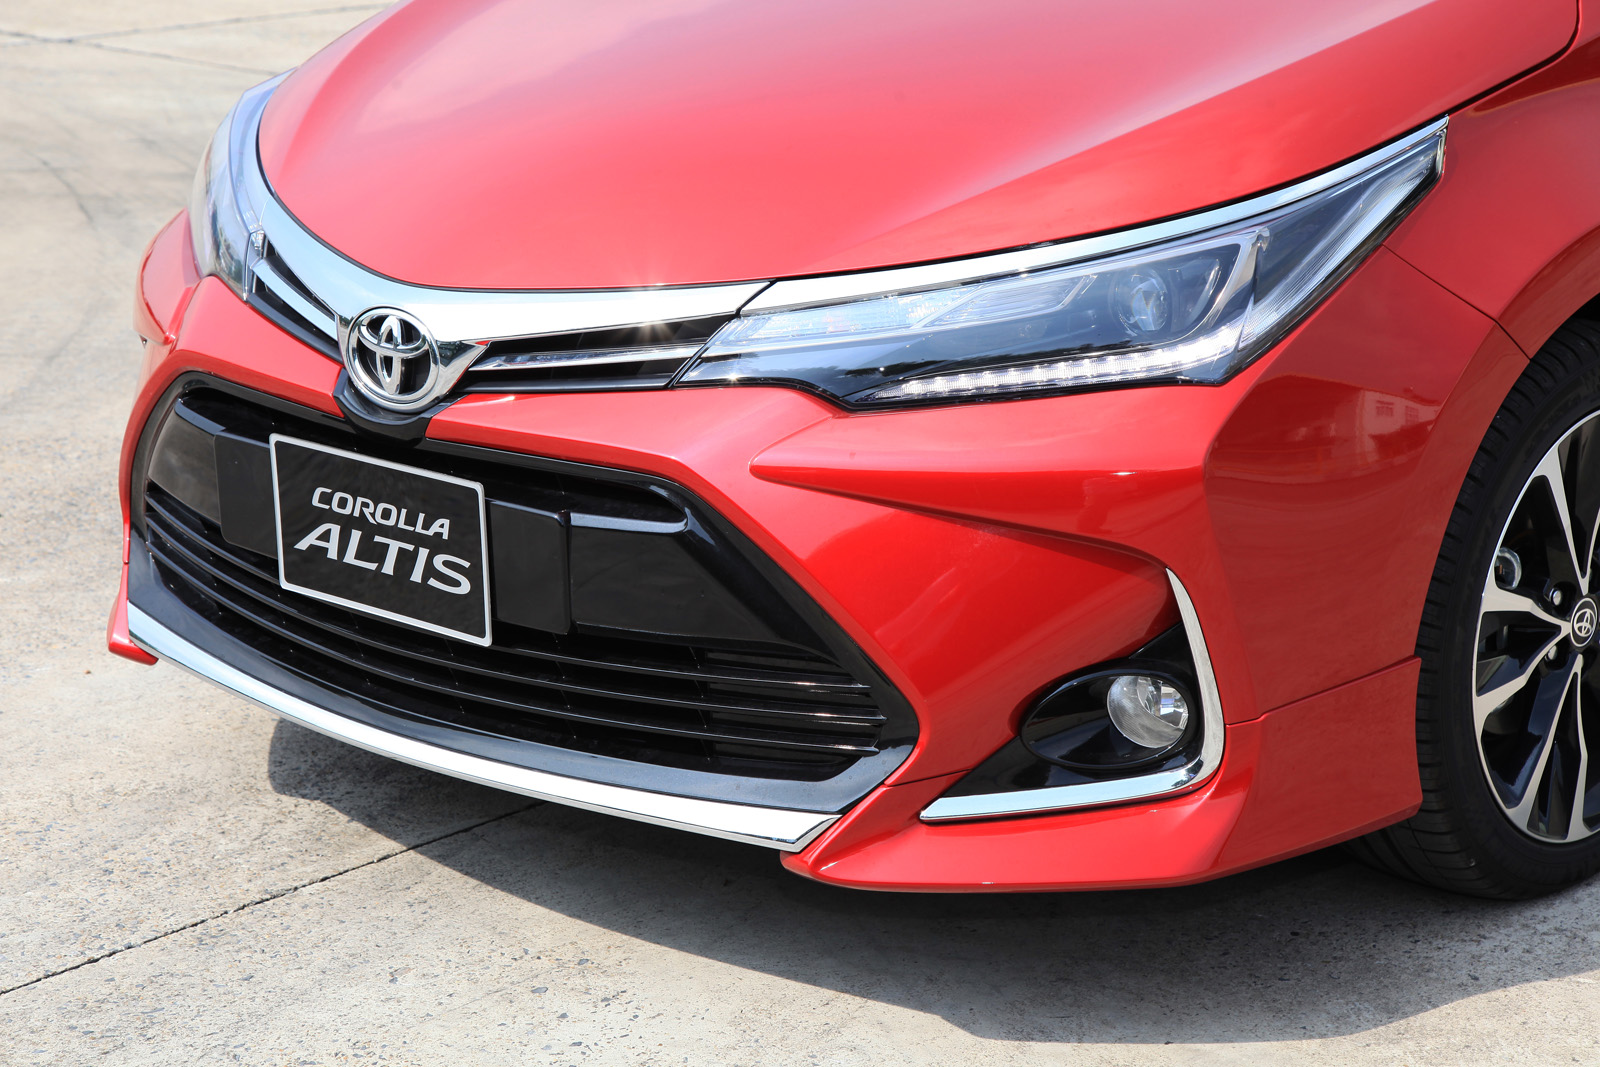 Toyota Corolla Altis 2020 chính thức ra mắt giá bán từ 630 triệu VNĐ   CÔNG TY CỔ PHẦN HÓA PHẨM QUỐC TẾ